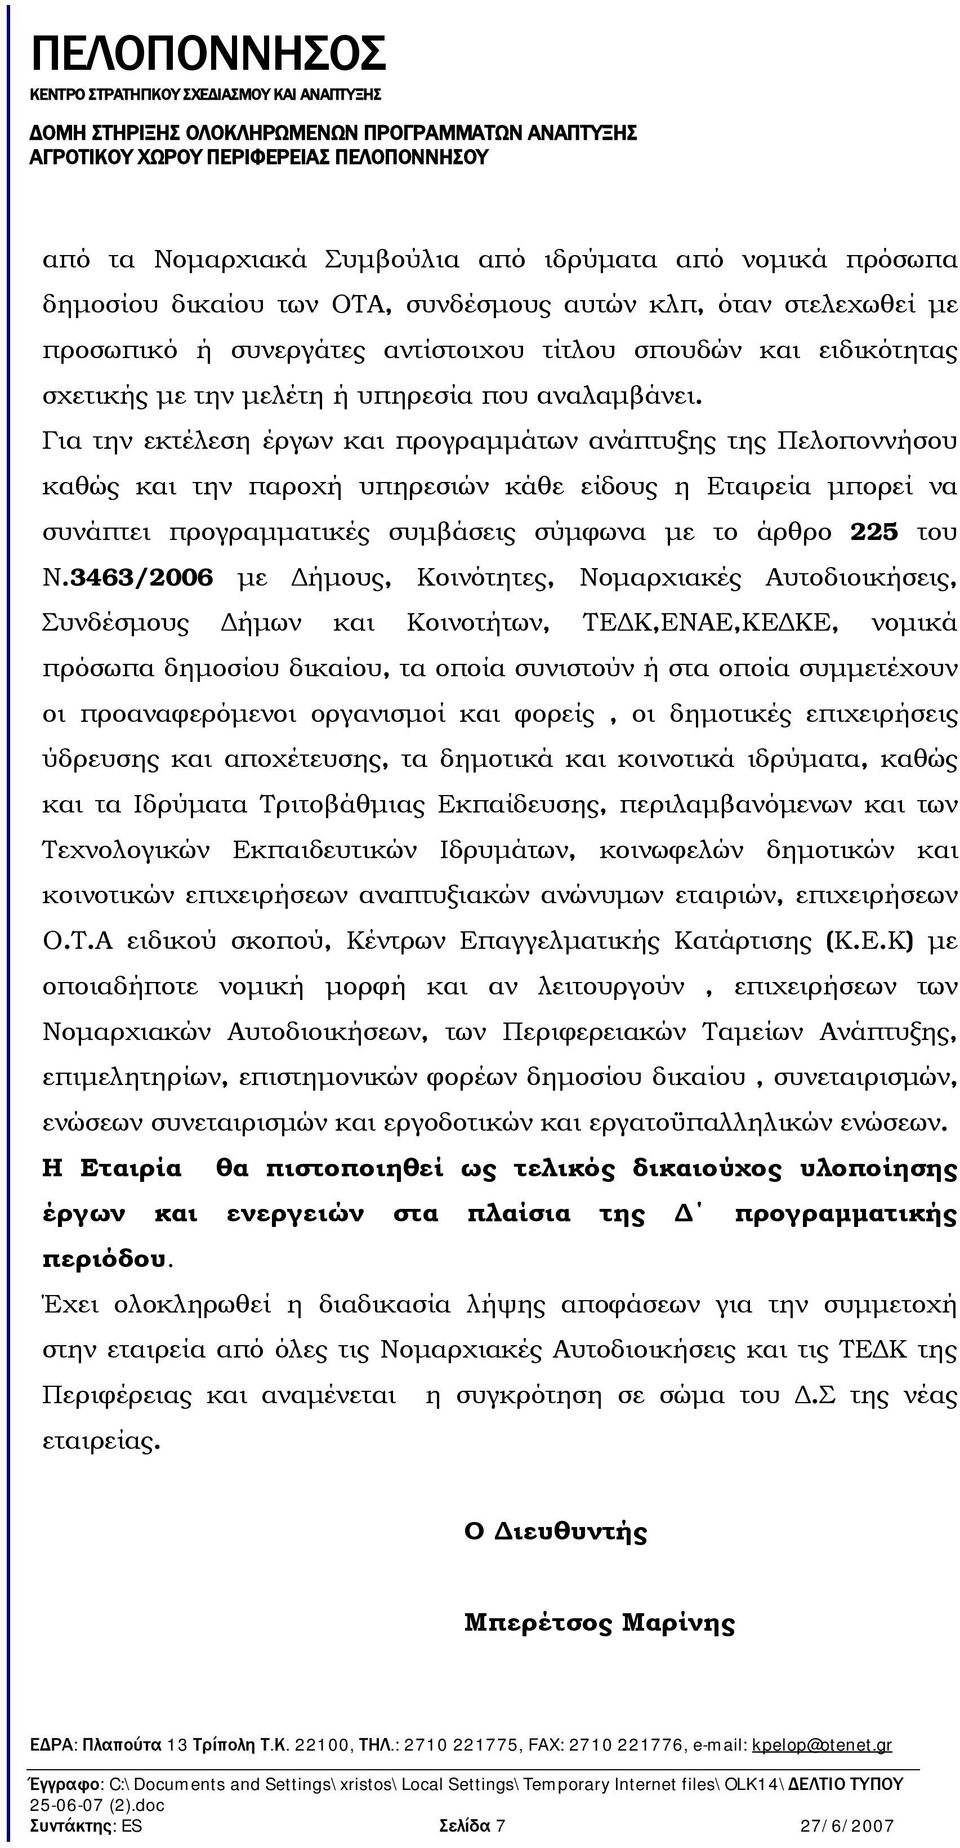 Για την εκτέλεση έργων και προγραμμάτων ανάπτυξης της Πελοποννήσου καθώς και την παροχή υπηρεσιών κάθε είδους η Εταιρεία μπορεί να συνάπτει προγραμματικές συμβάσεις σύμφωνα με το άρθρο 225 του Ν.